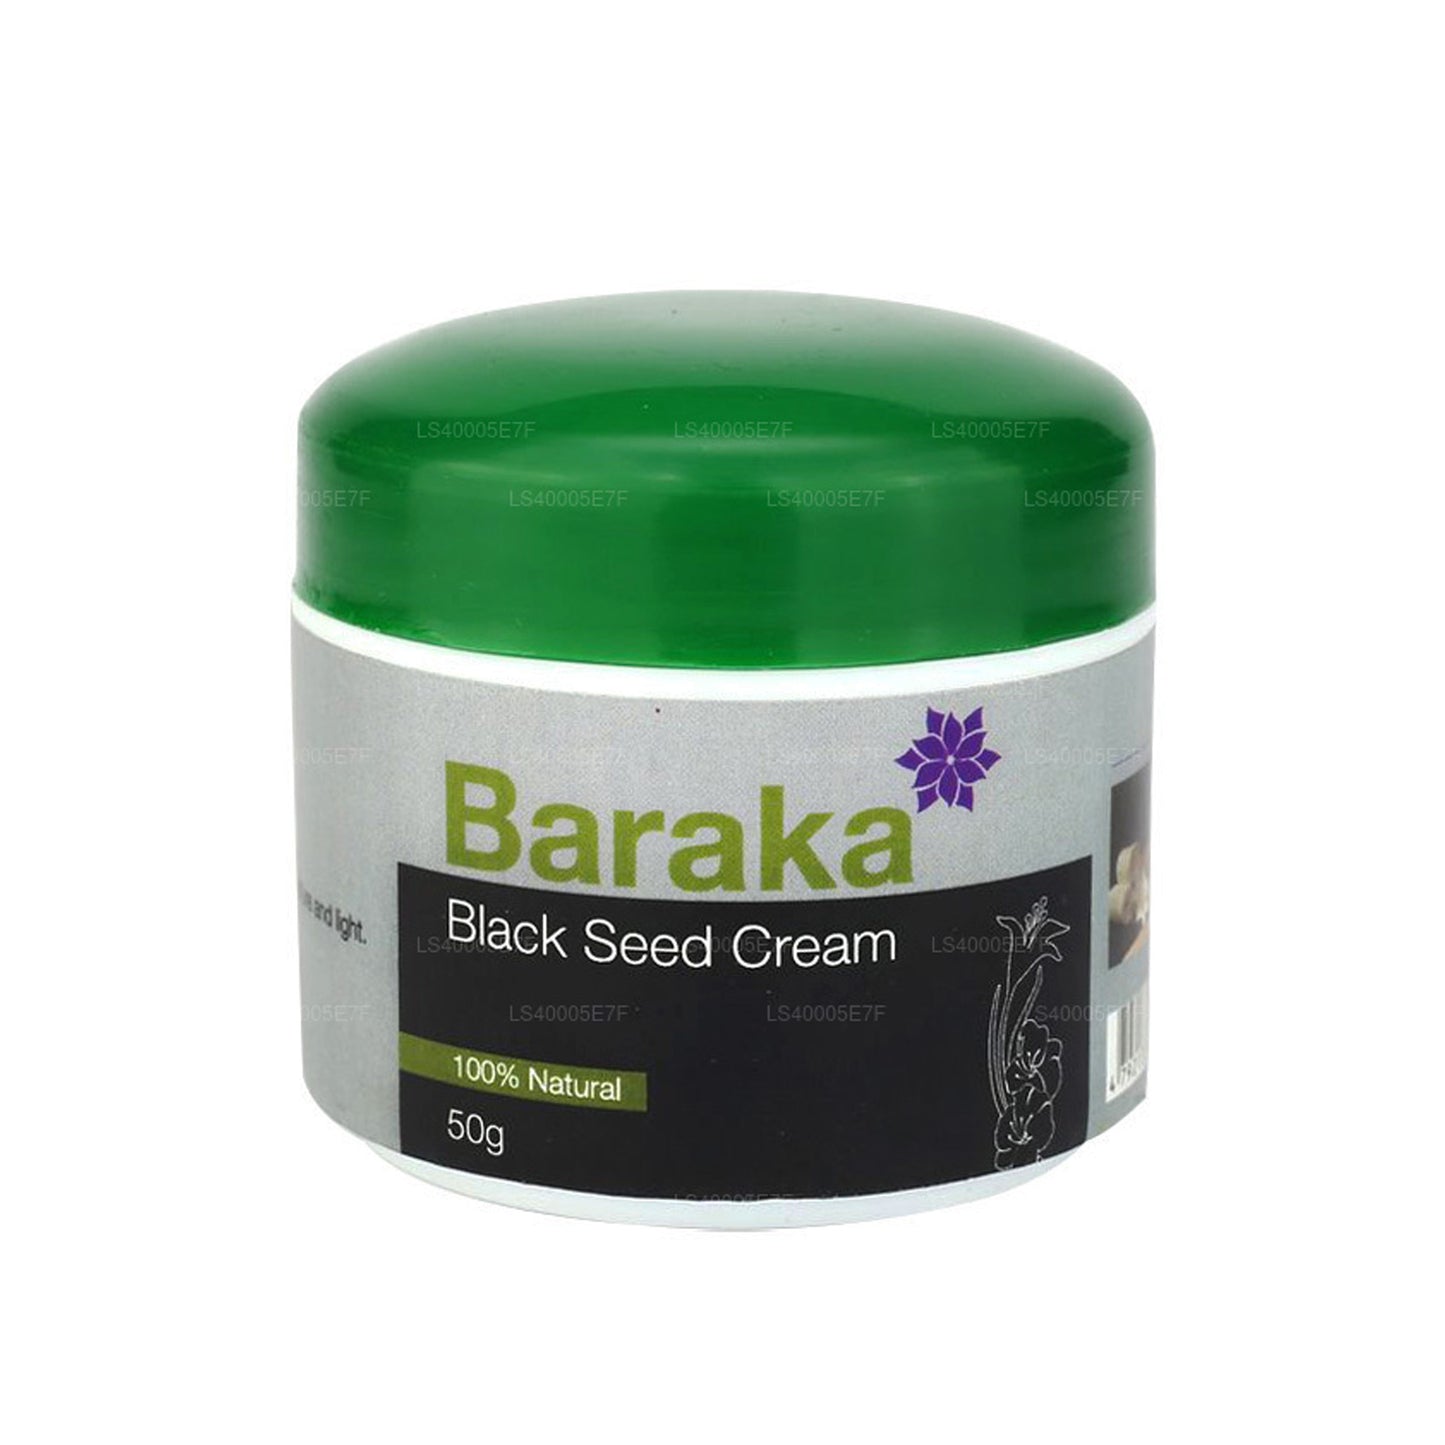 Baraka Black Seed Cream (50g)